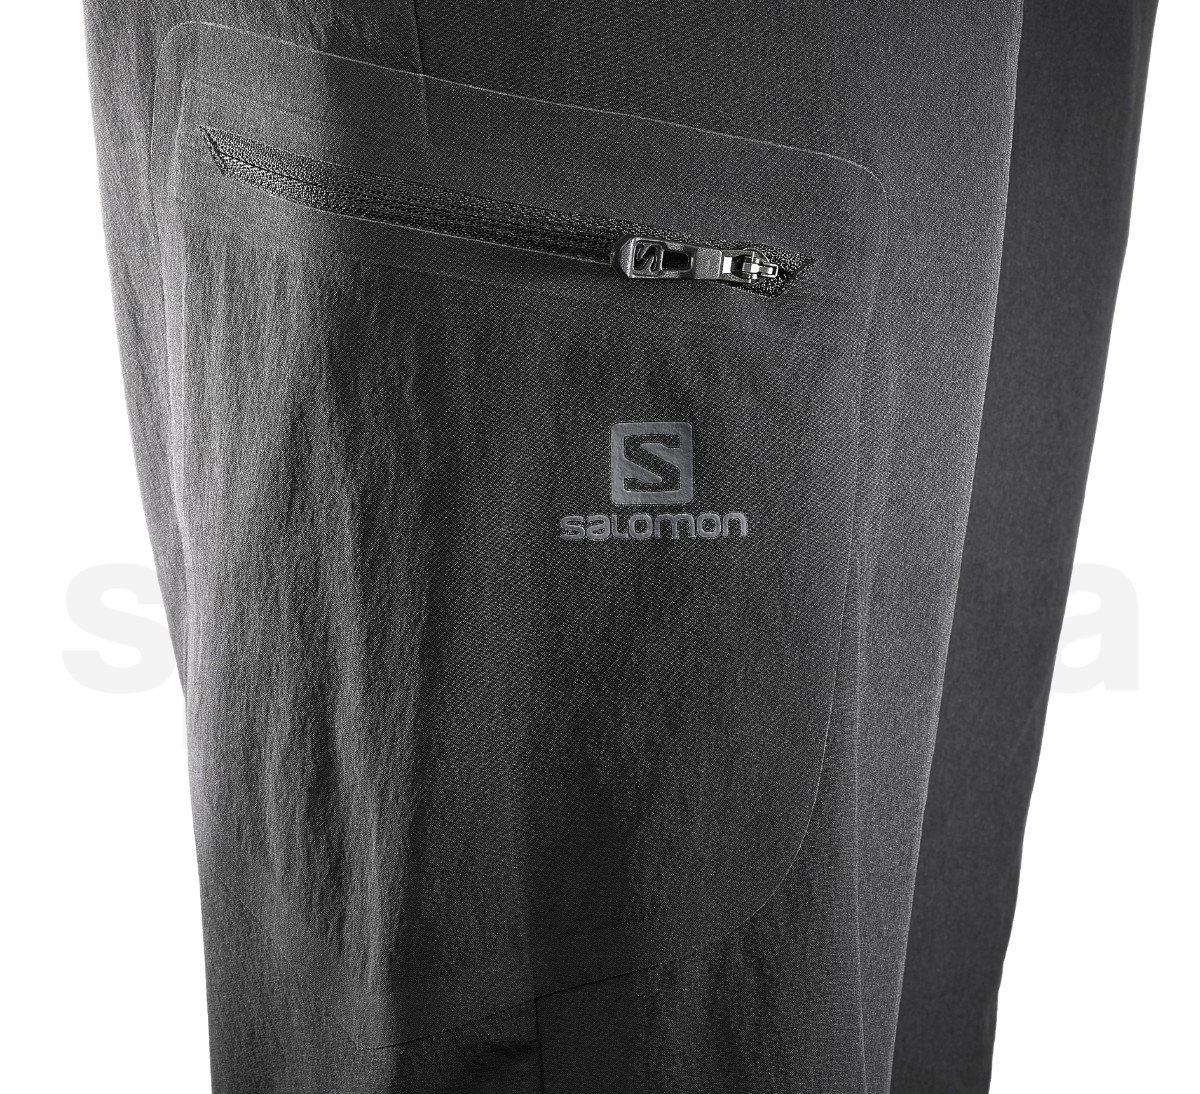 Kalhoty Salomon WAYFARER STRAIGHT PANT W - černá (zkrácená délka)